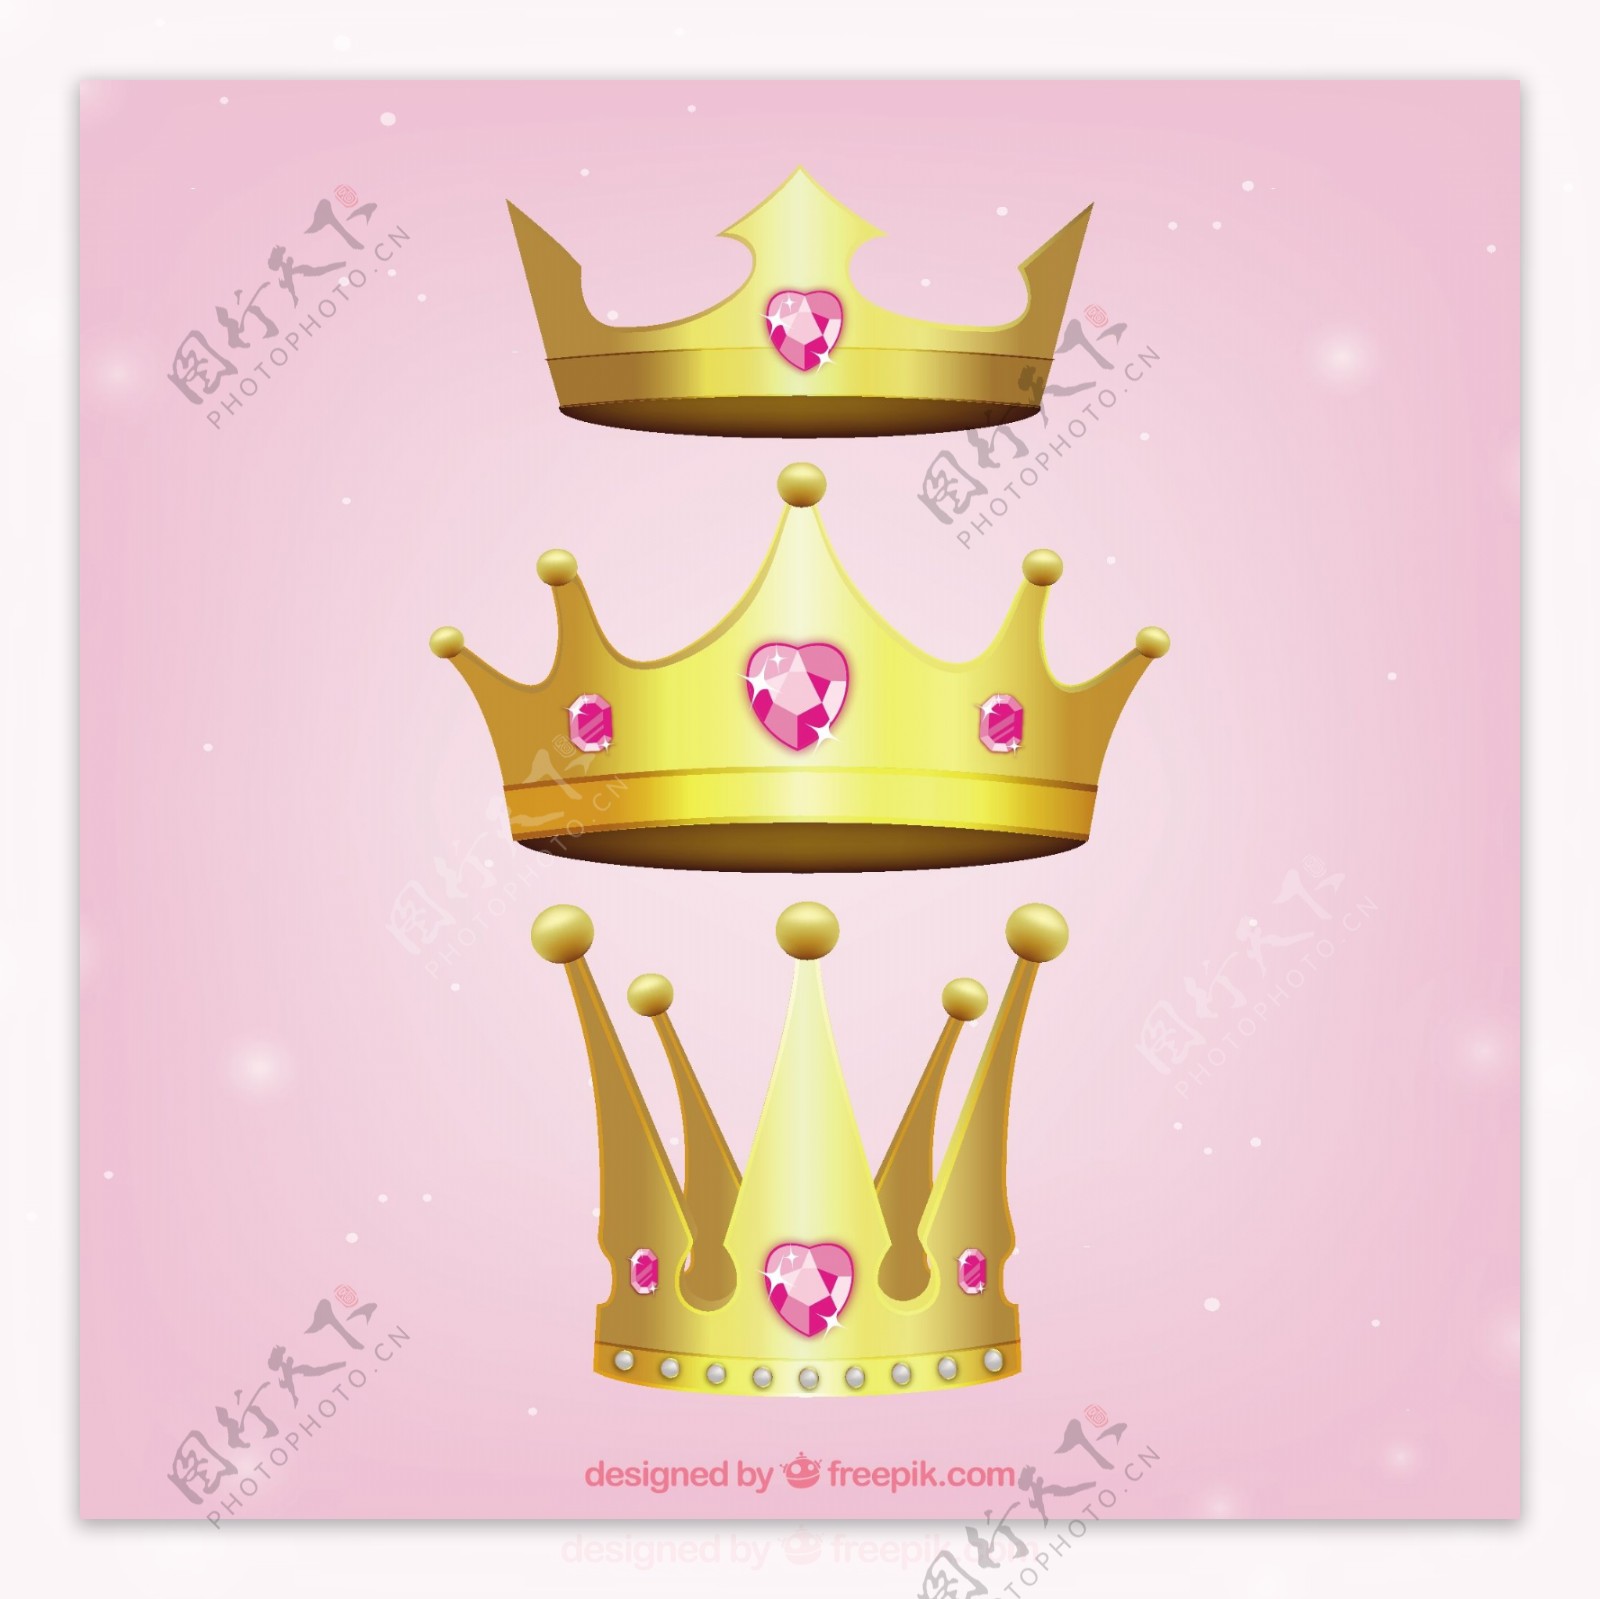 三枚镶嵌宝石的金色皇冠